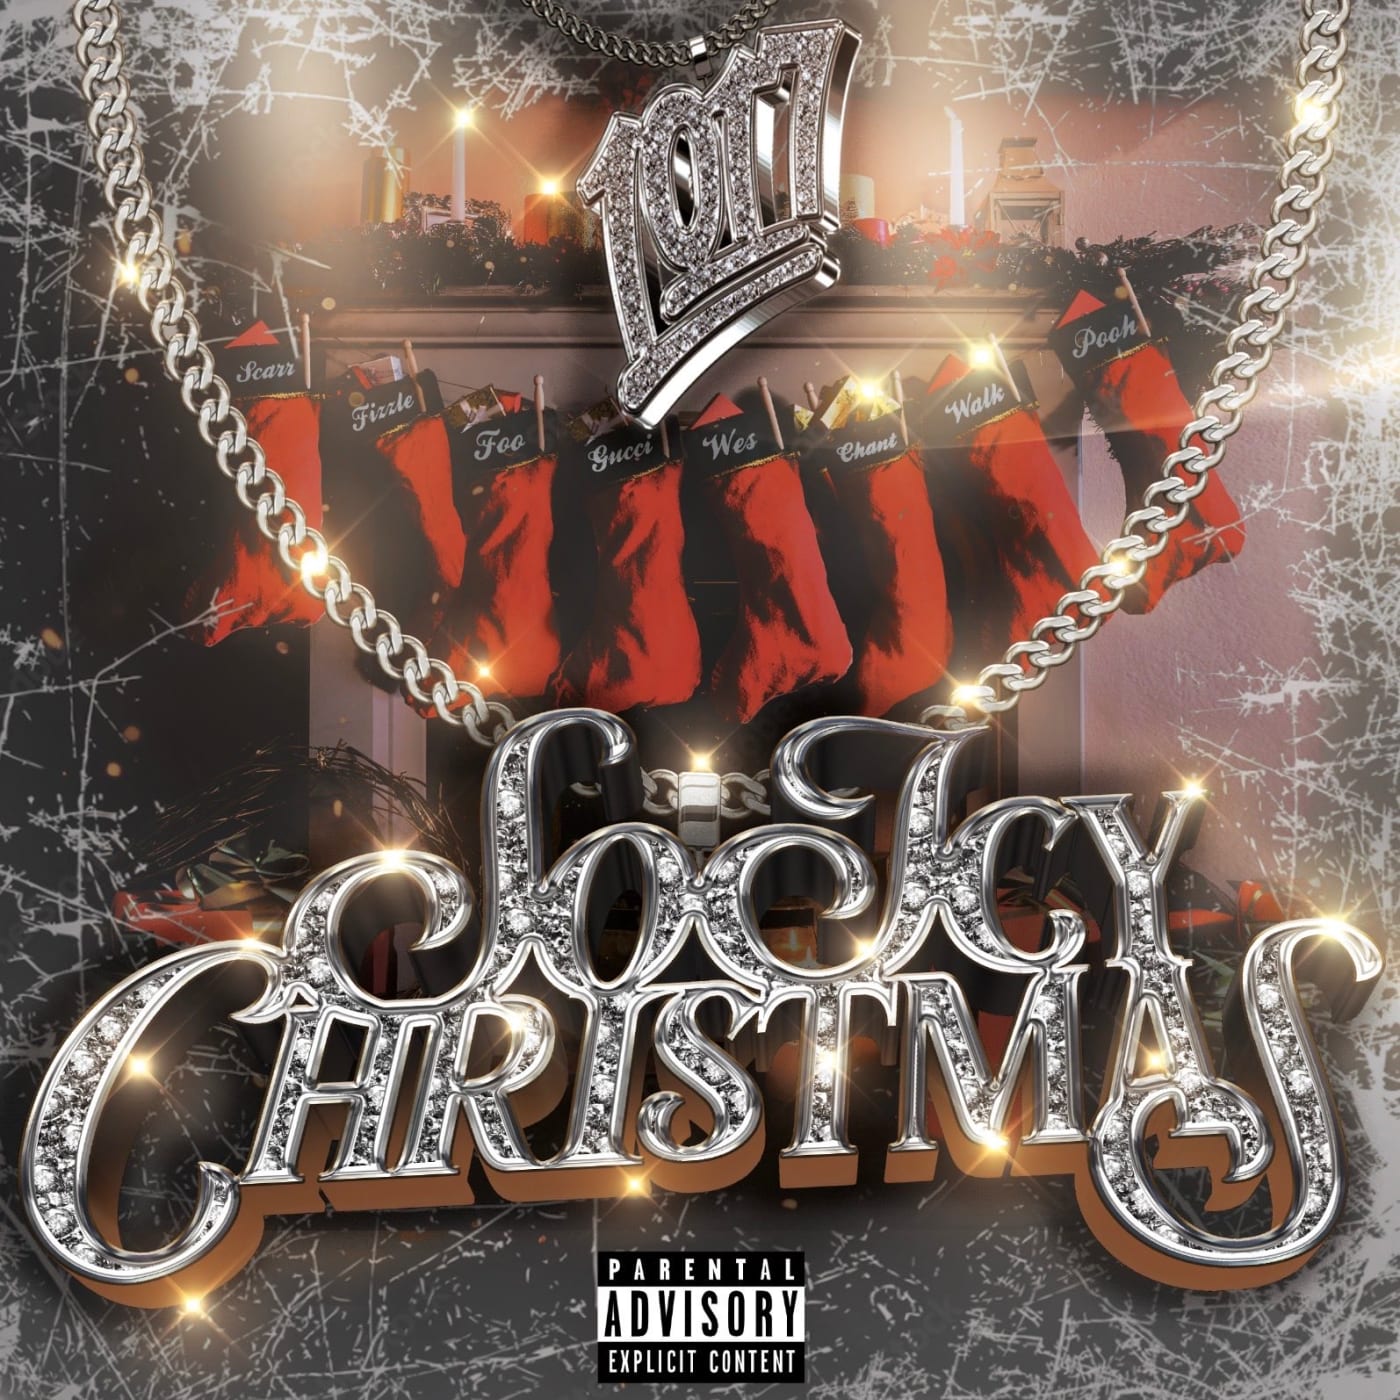 Skeptisk At sige sandheden Mod viljen Gucci Mane Shares New 1017 Compilation 'So Icy Christmas' | Complex